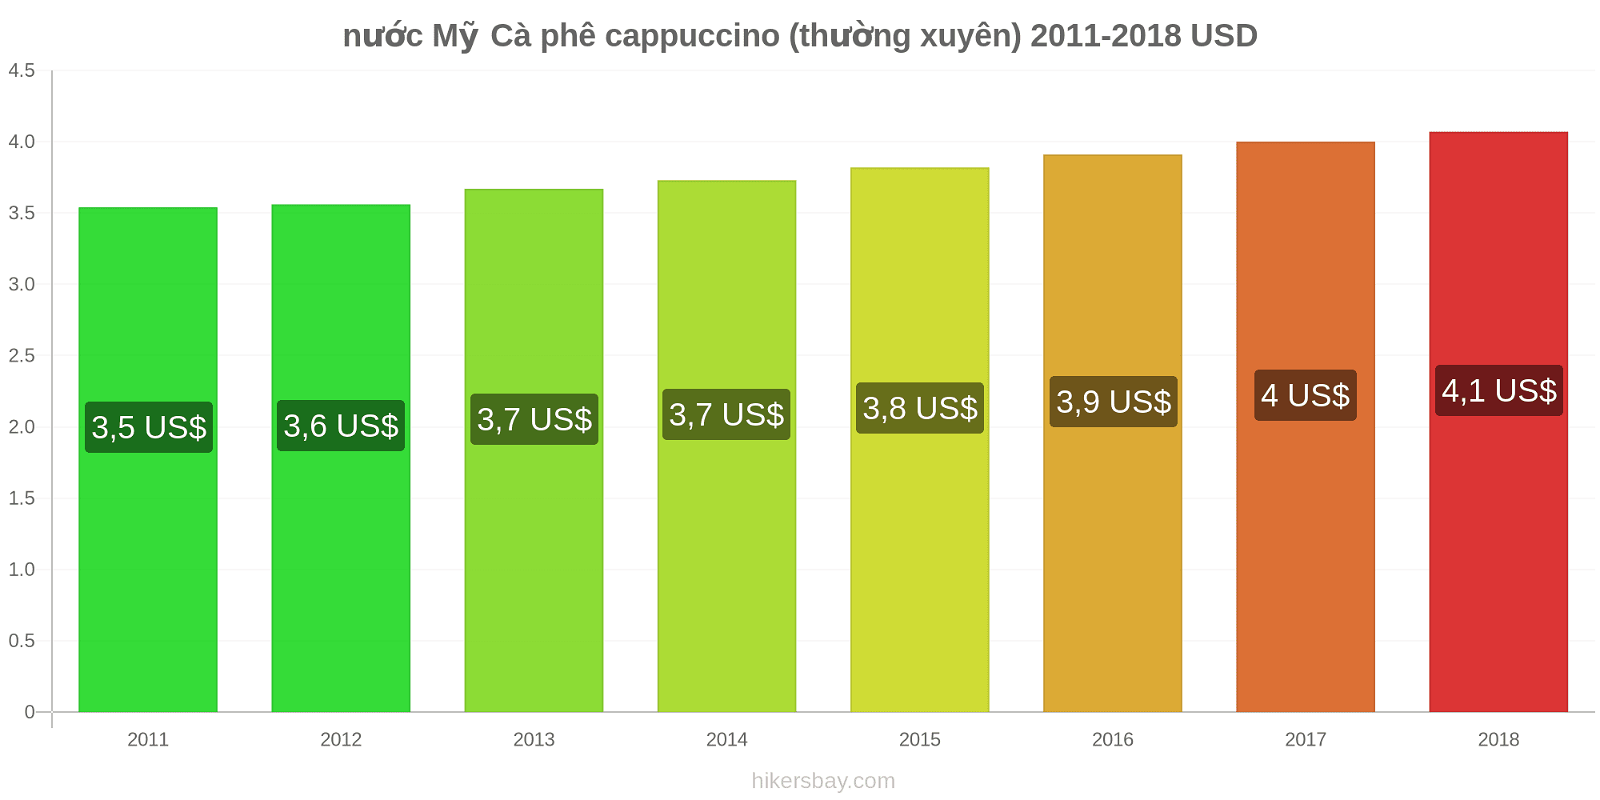 nước Mỹ thay đổi giá cả Cà phê cappuccino hikersbay.com